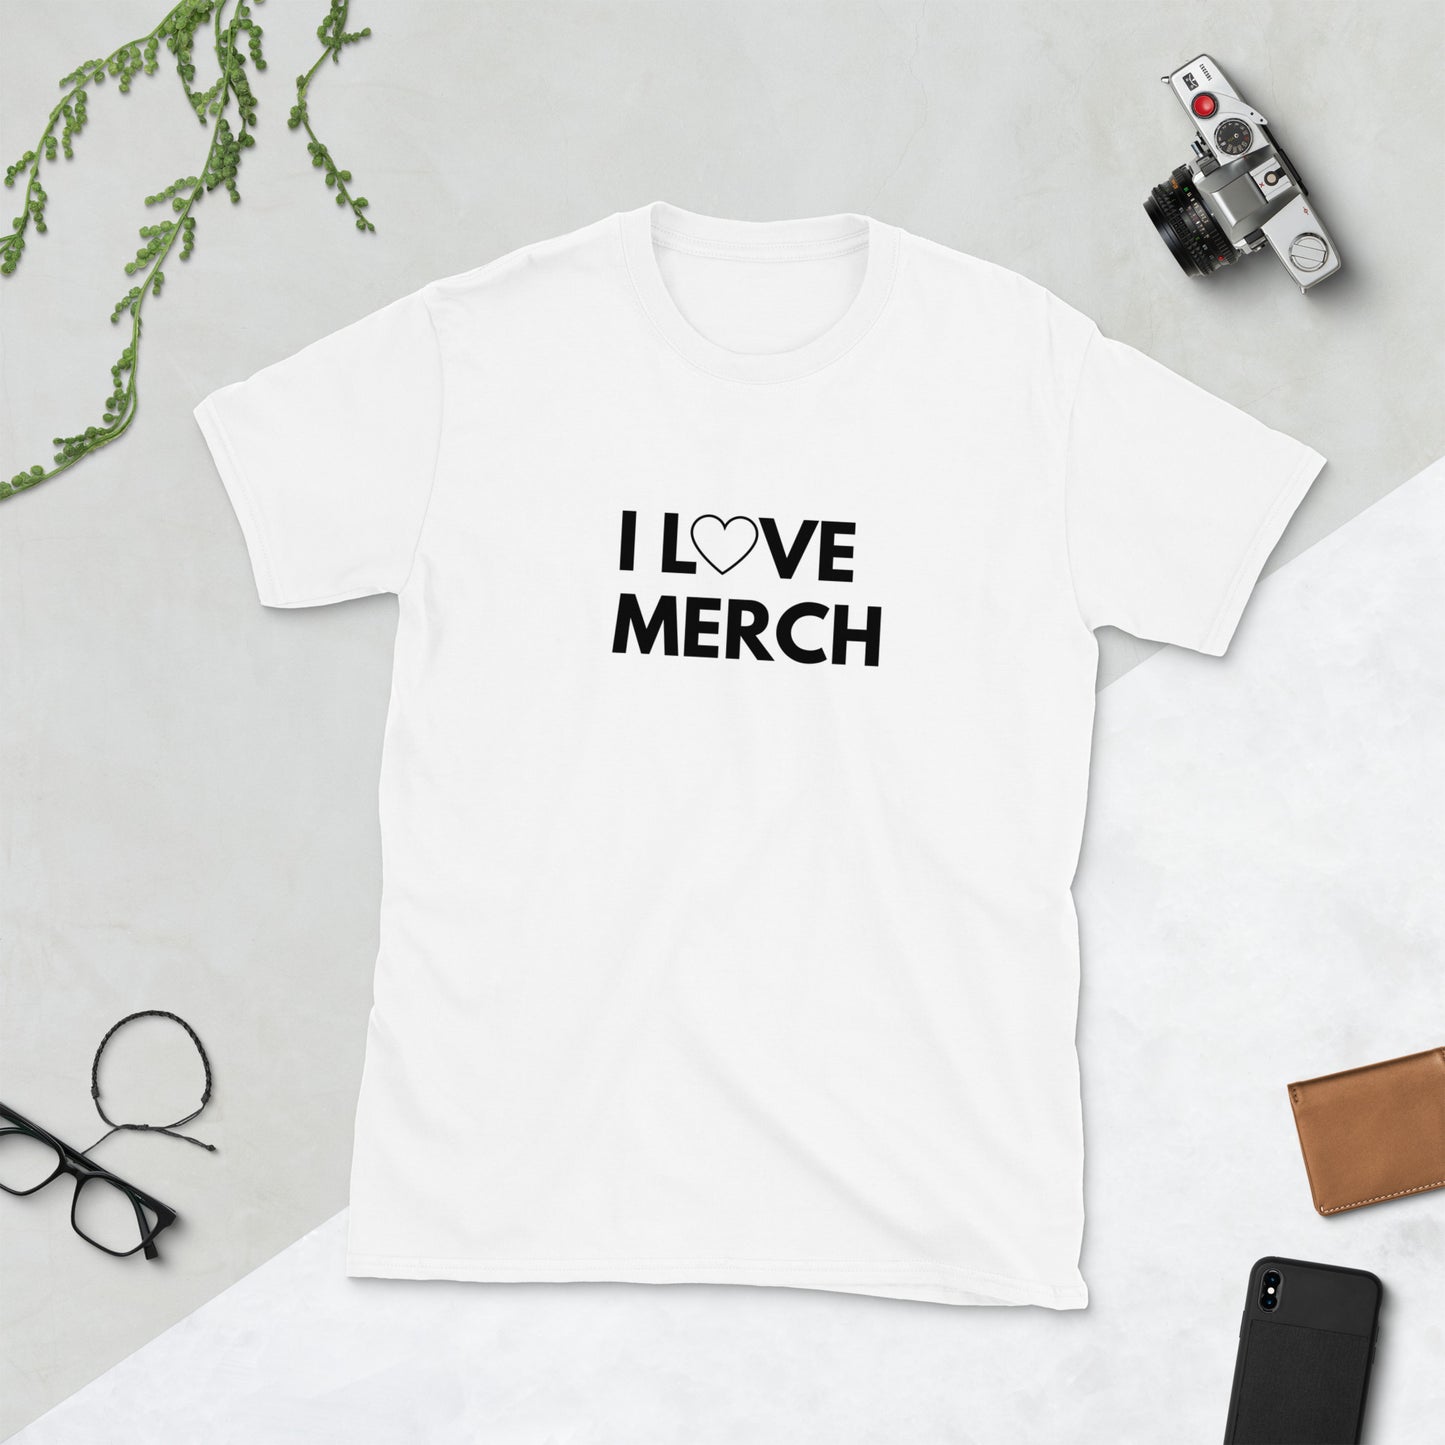 I LOVE MERCH: Offizielles MERCH BAKERY T-Shirt - Unisex